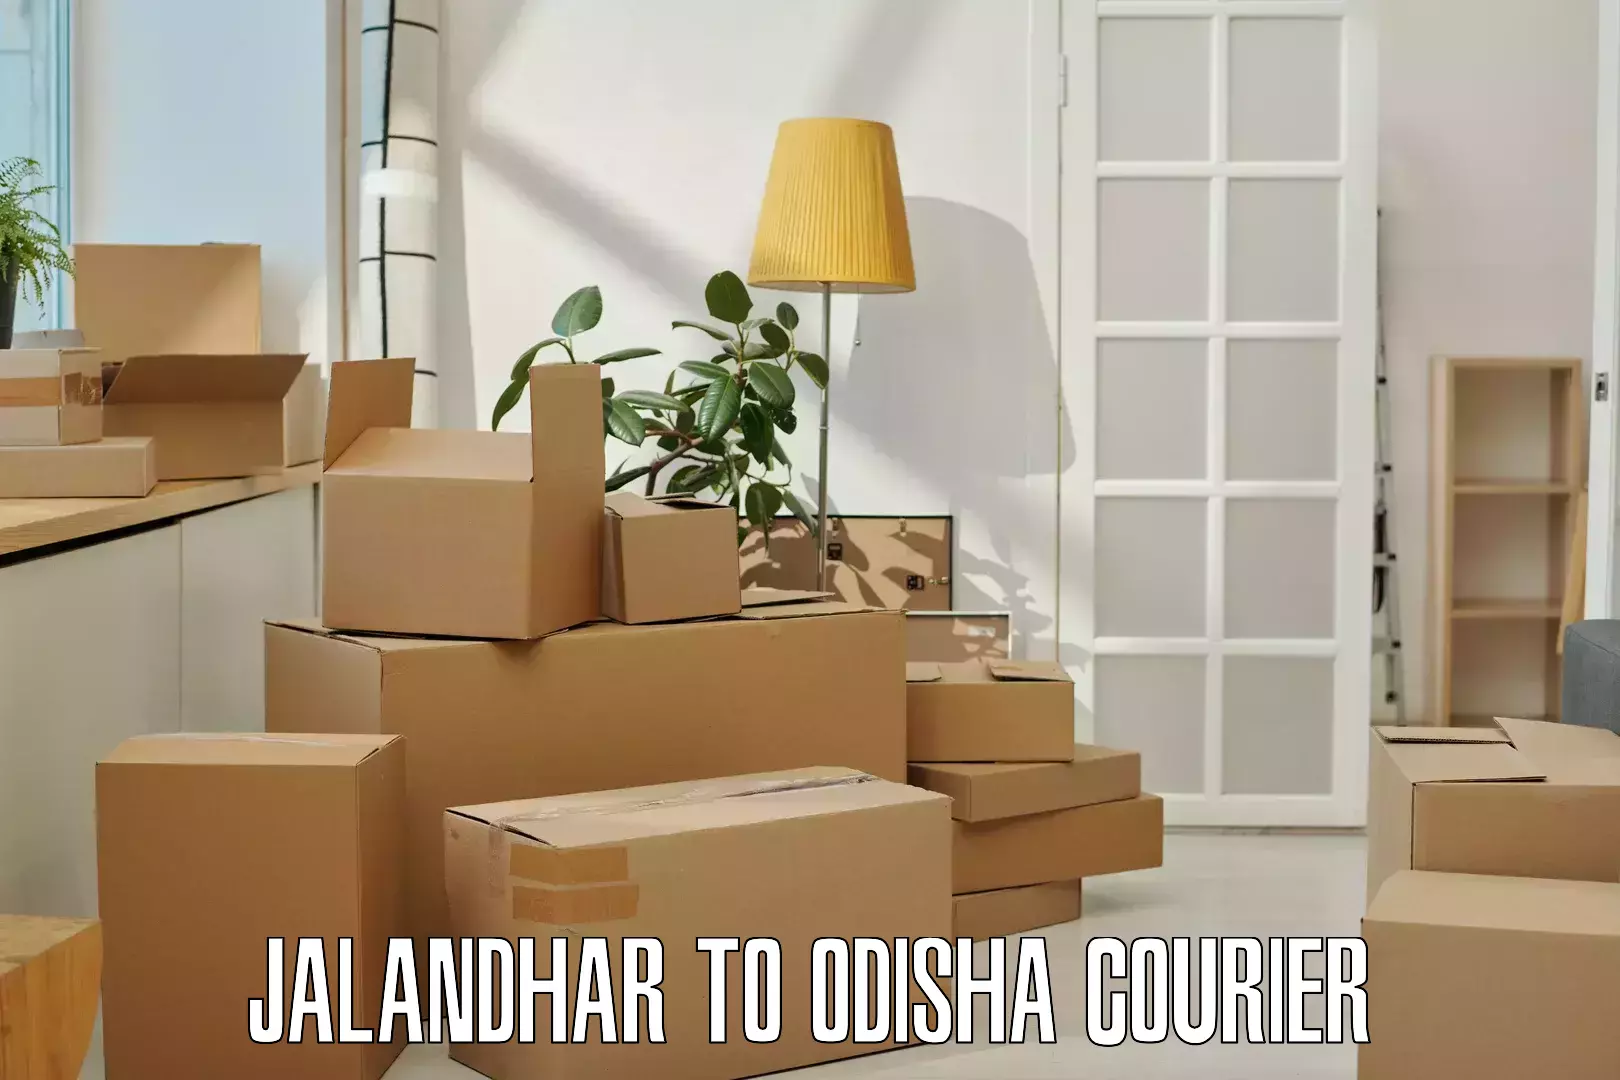 High-capacity parcel service Jalandhar to Raj Berhampur